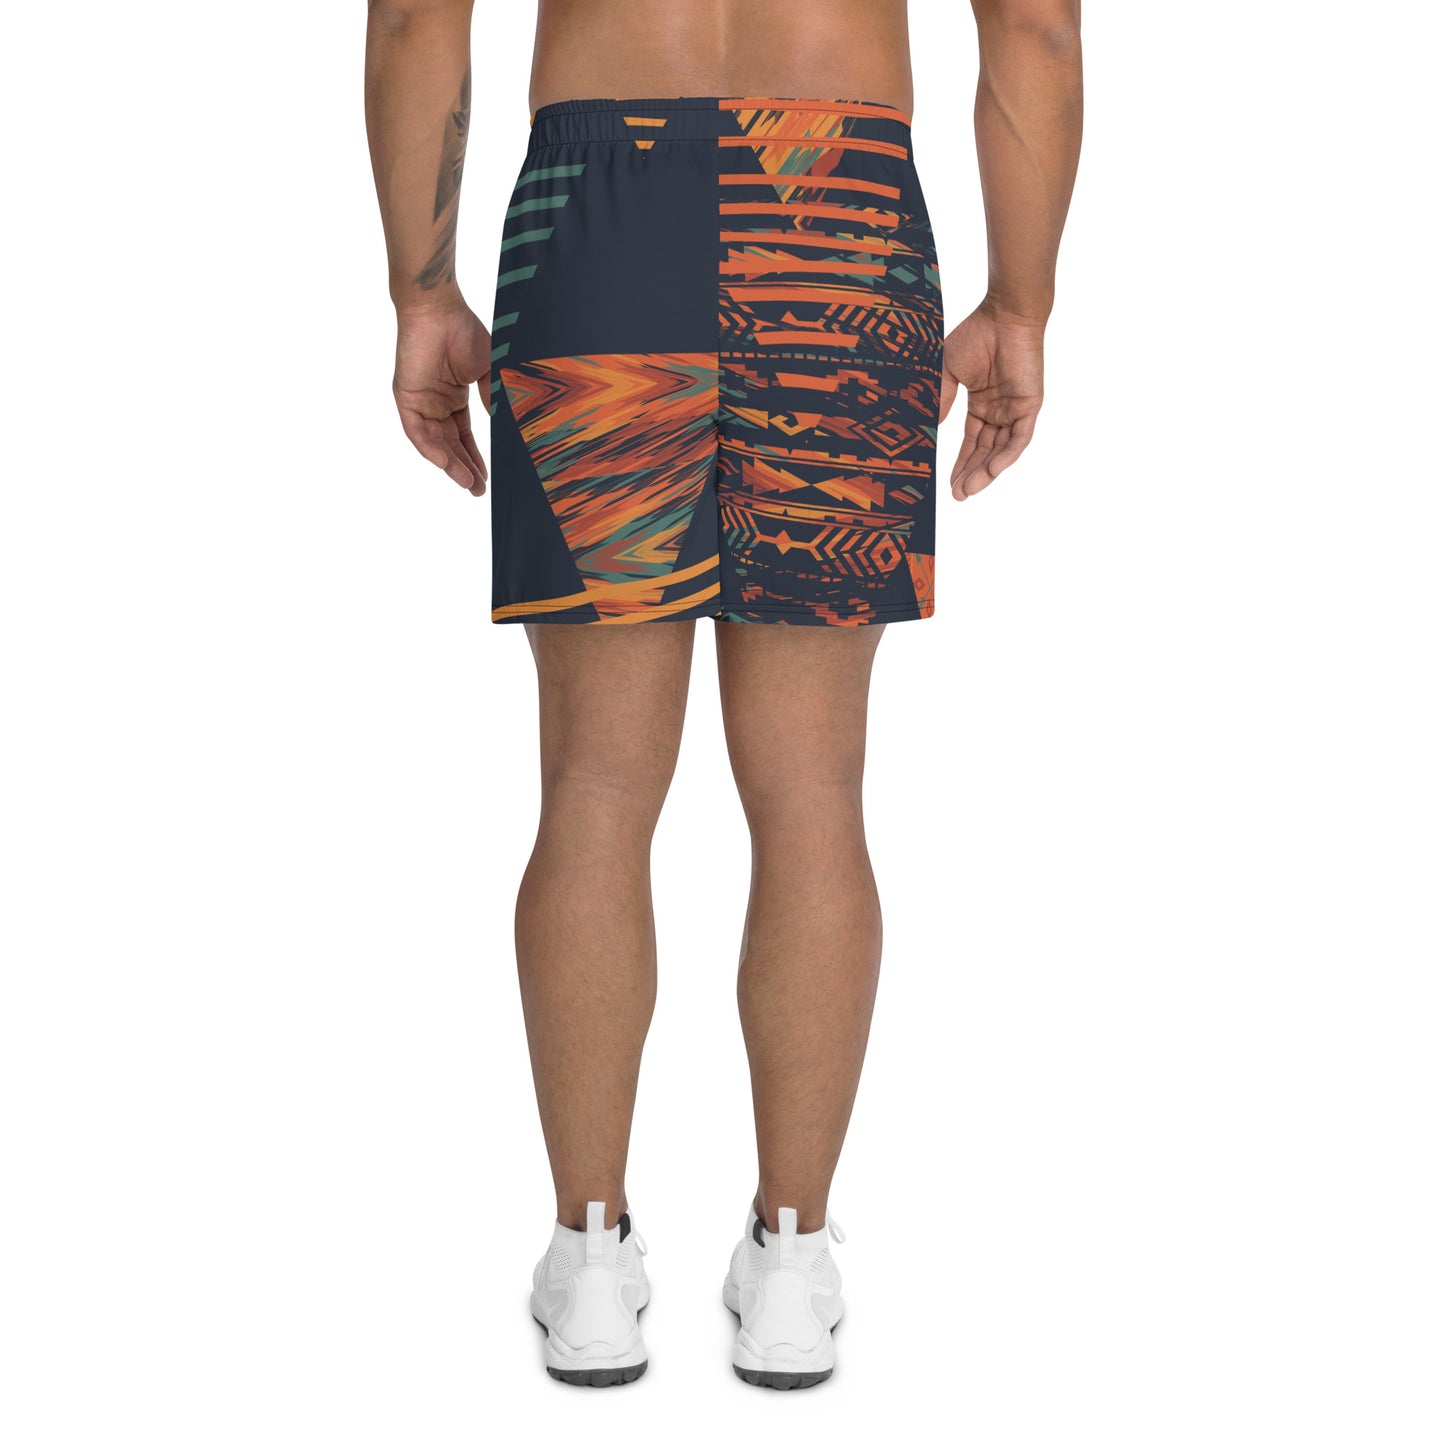 Herren-Shorts in Orange und Indigo